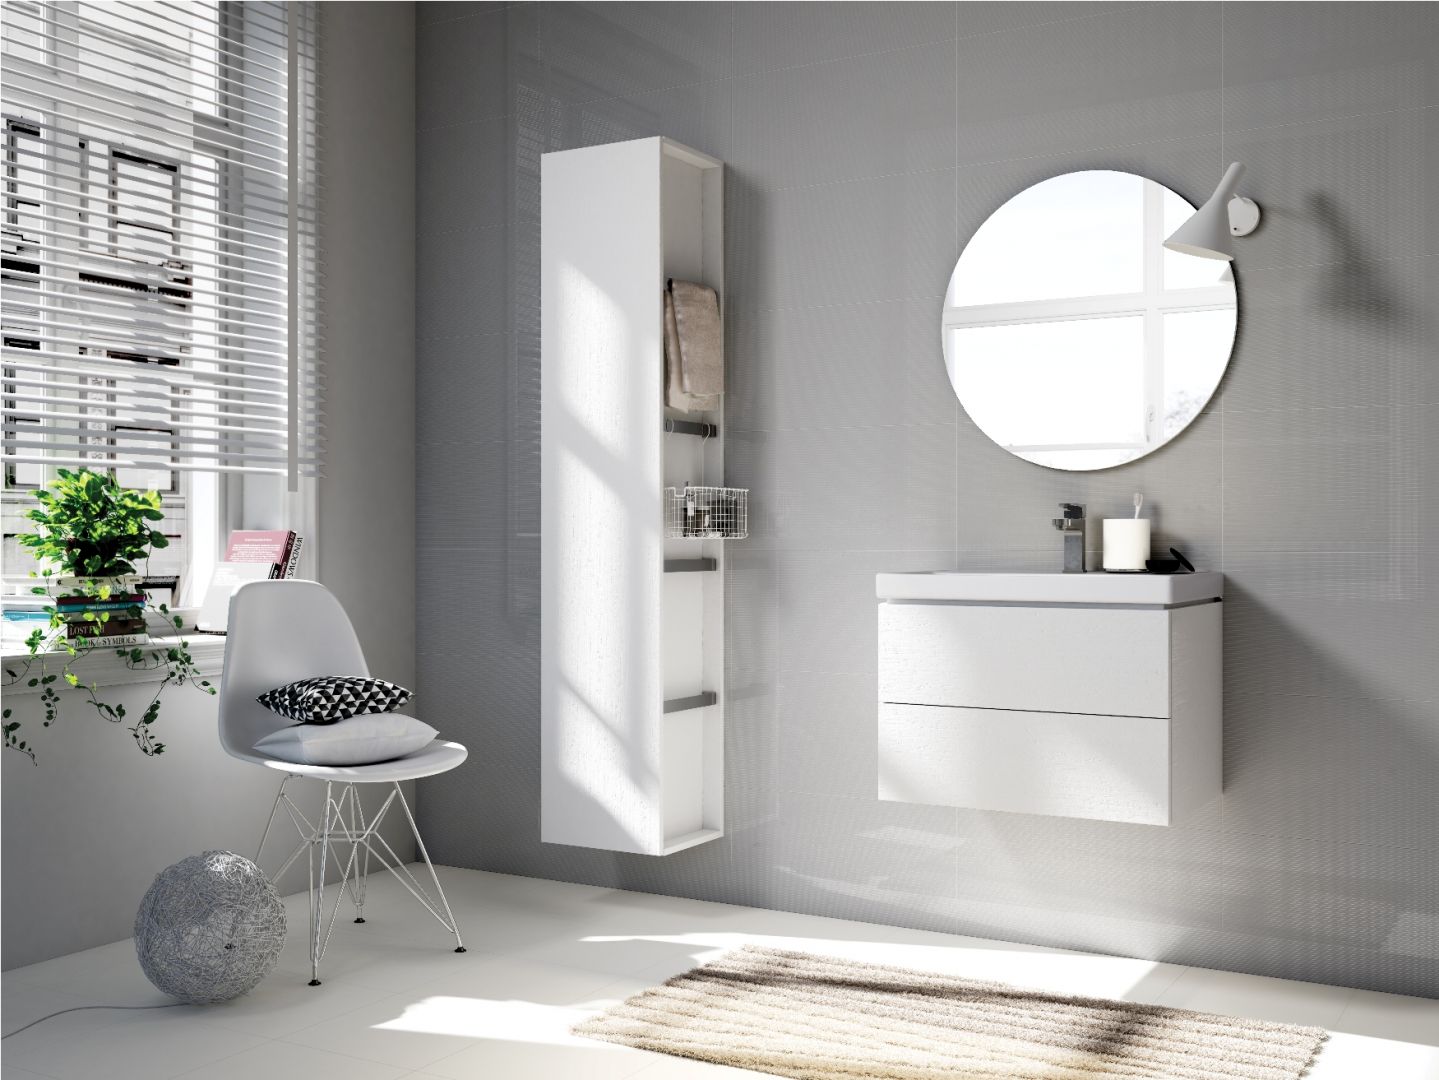 Białe meble łazienkowe z kolekcji City marki Cersanit. Fot. Cersanit